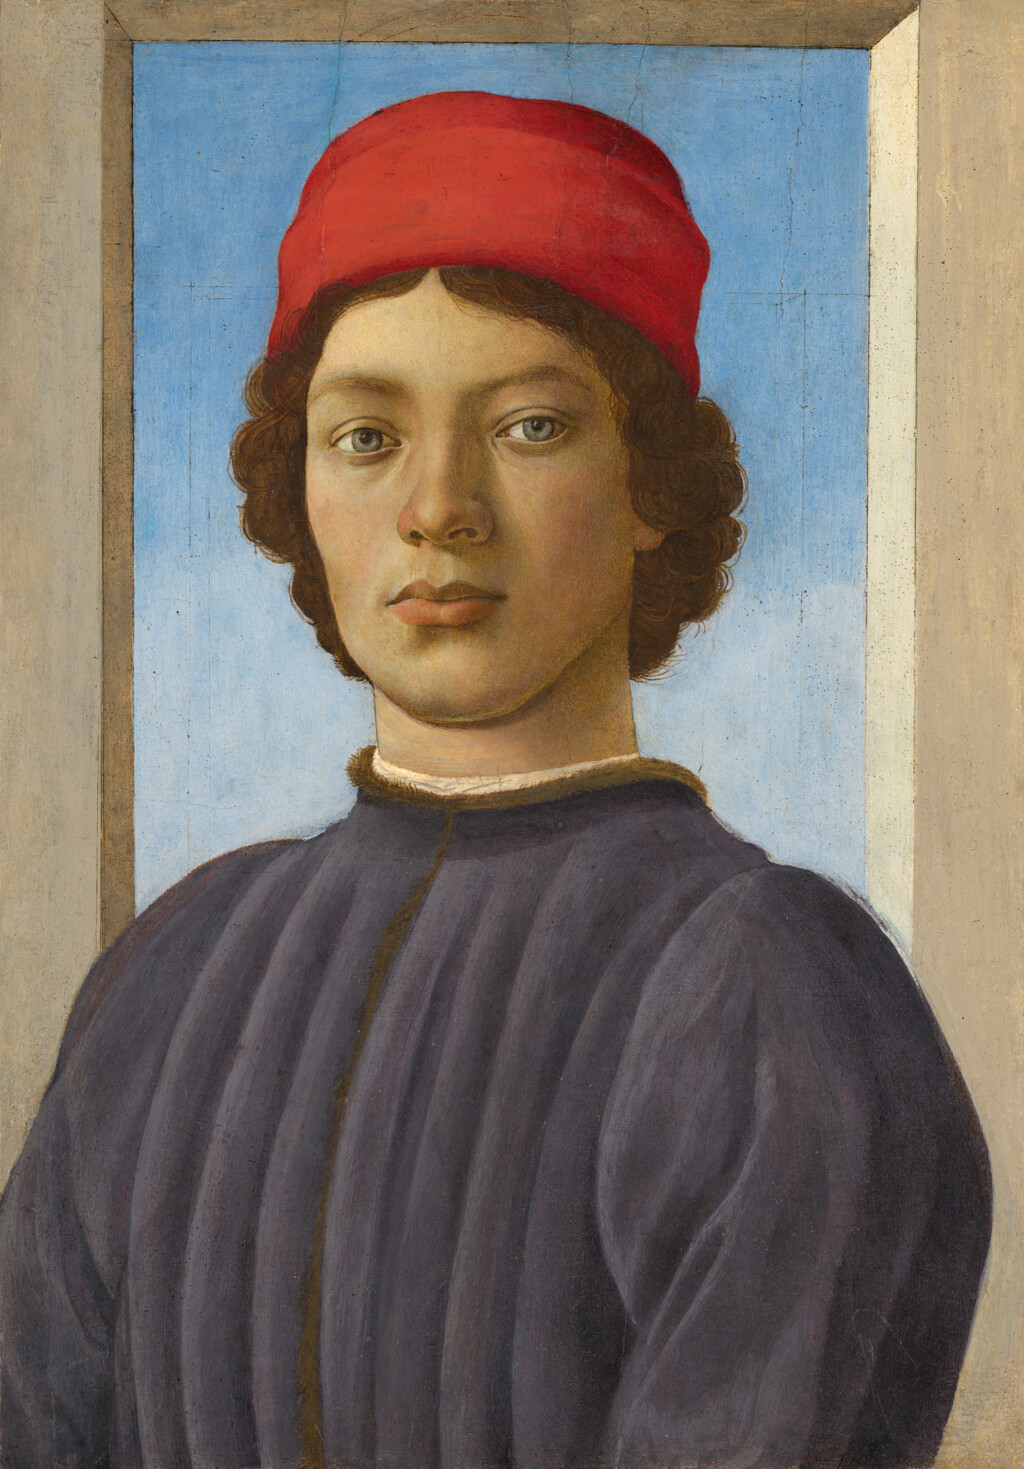 FILIPPINO LIPPI
Bildnis eines jungen Mannes, um 1485
© Courtesy National Gallery of Art, Washington,
Andrew W. Mellon Collection